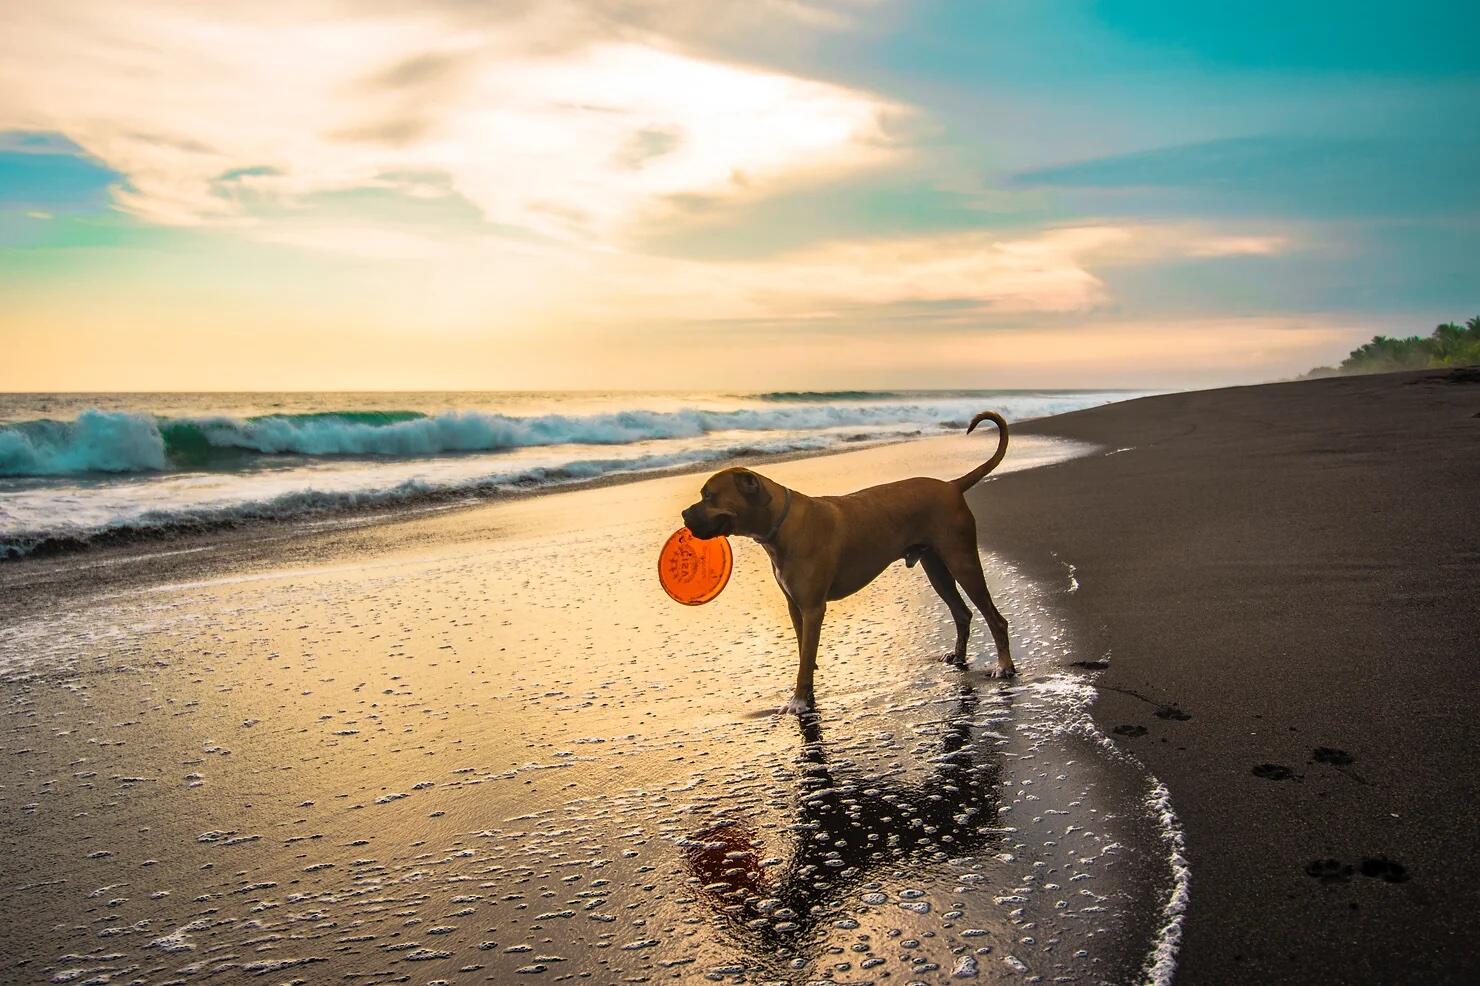 An off-leash dog on the beach